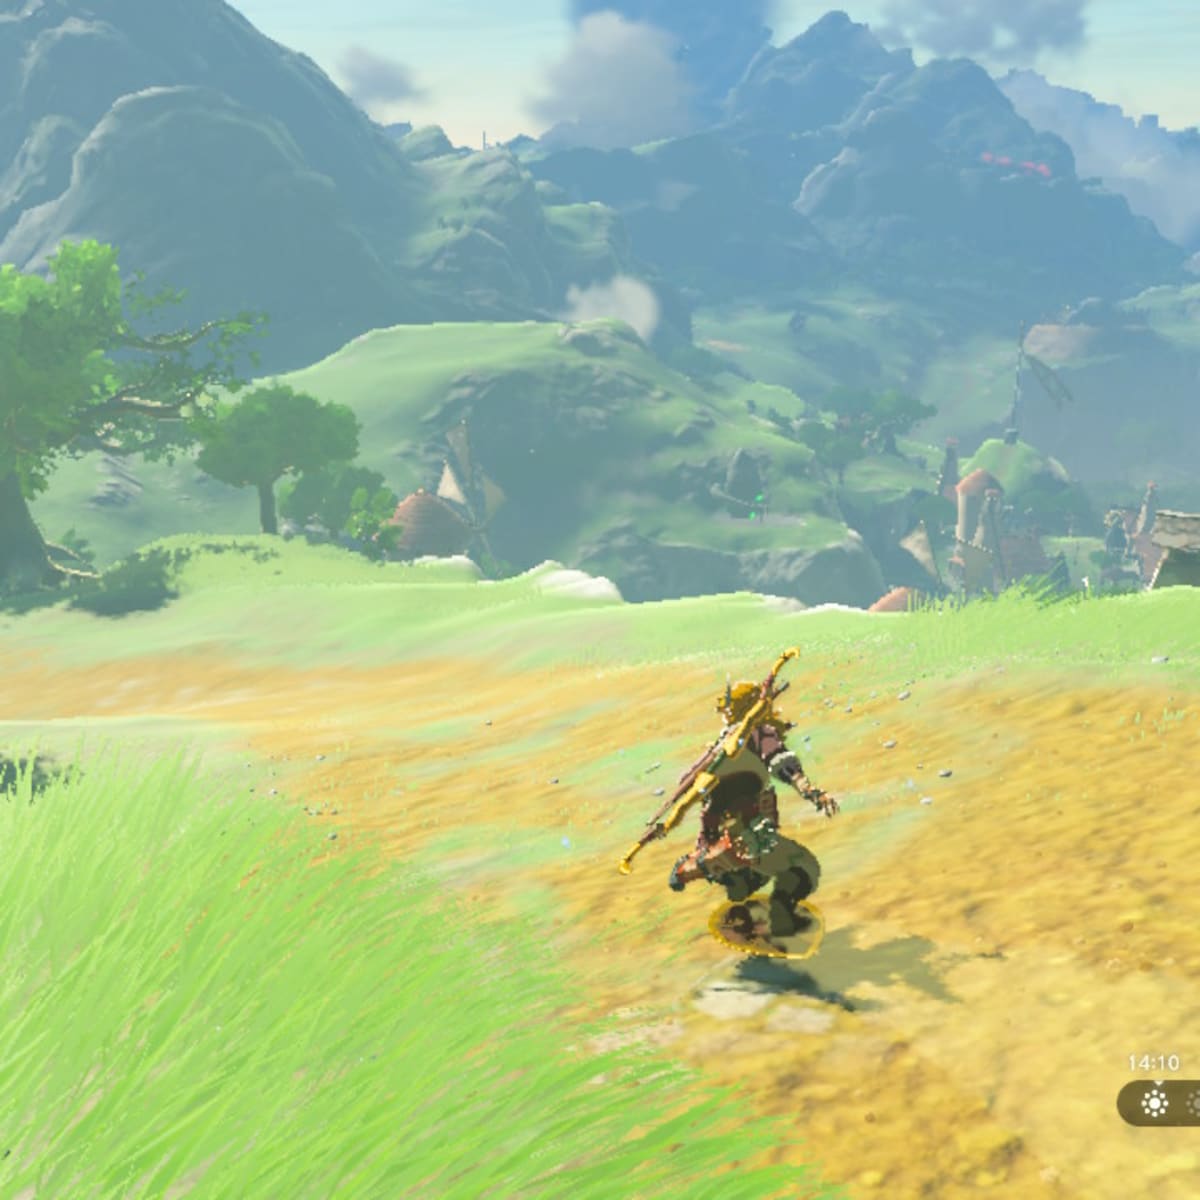 The Legend of Zelda - Raise your shields! The Legend of Zelda